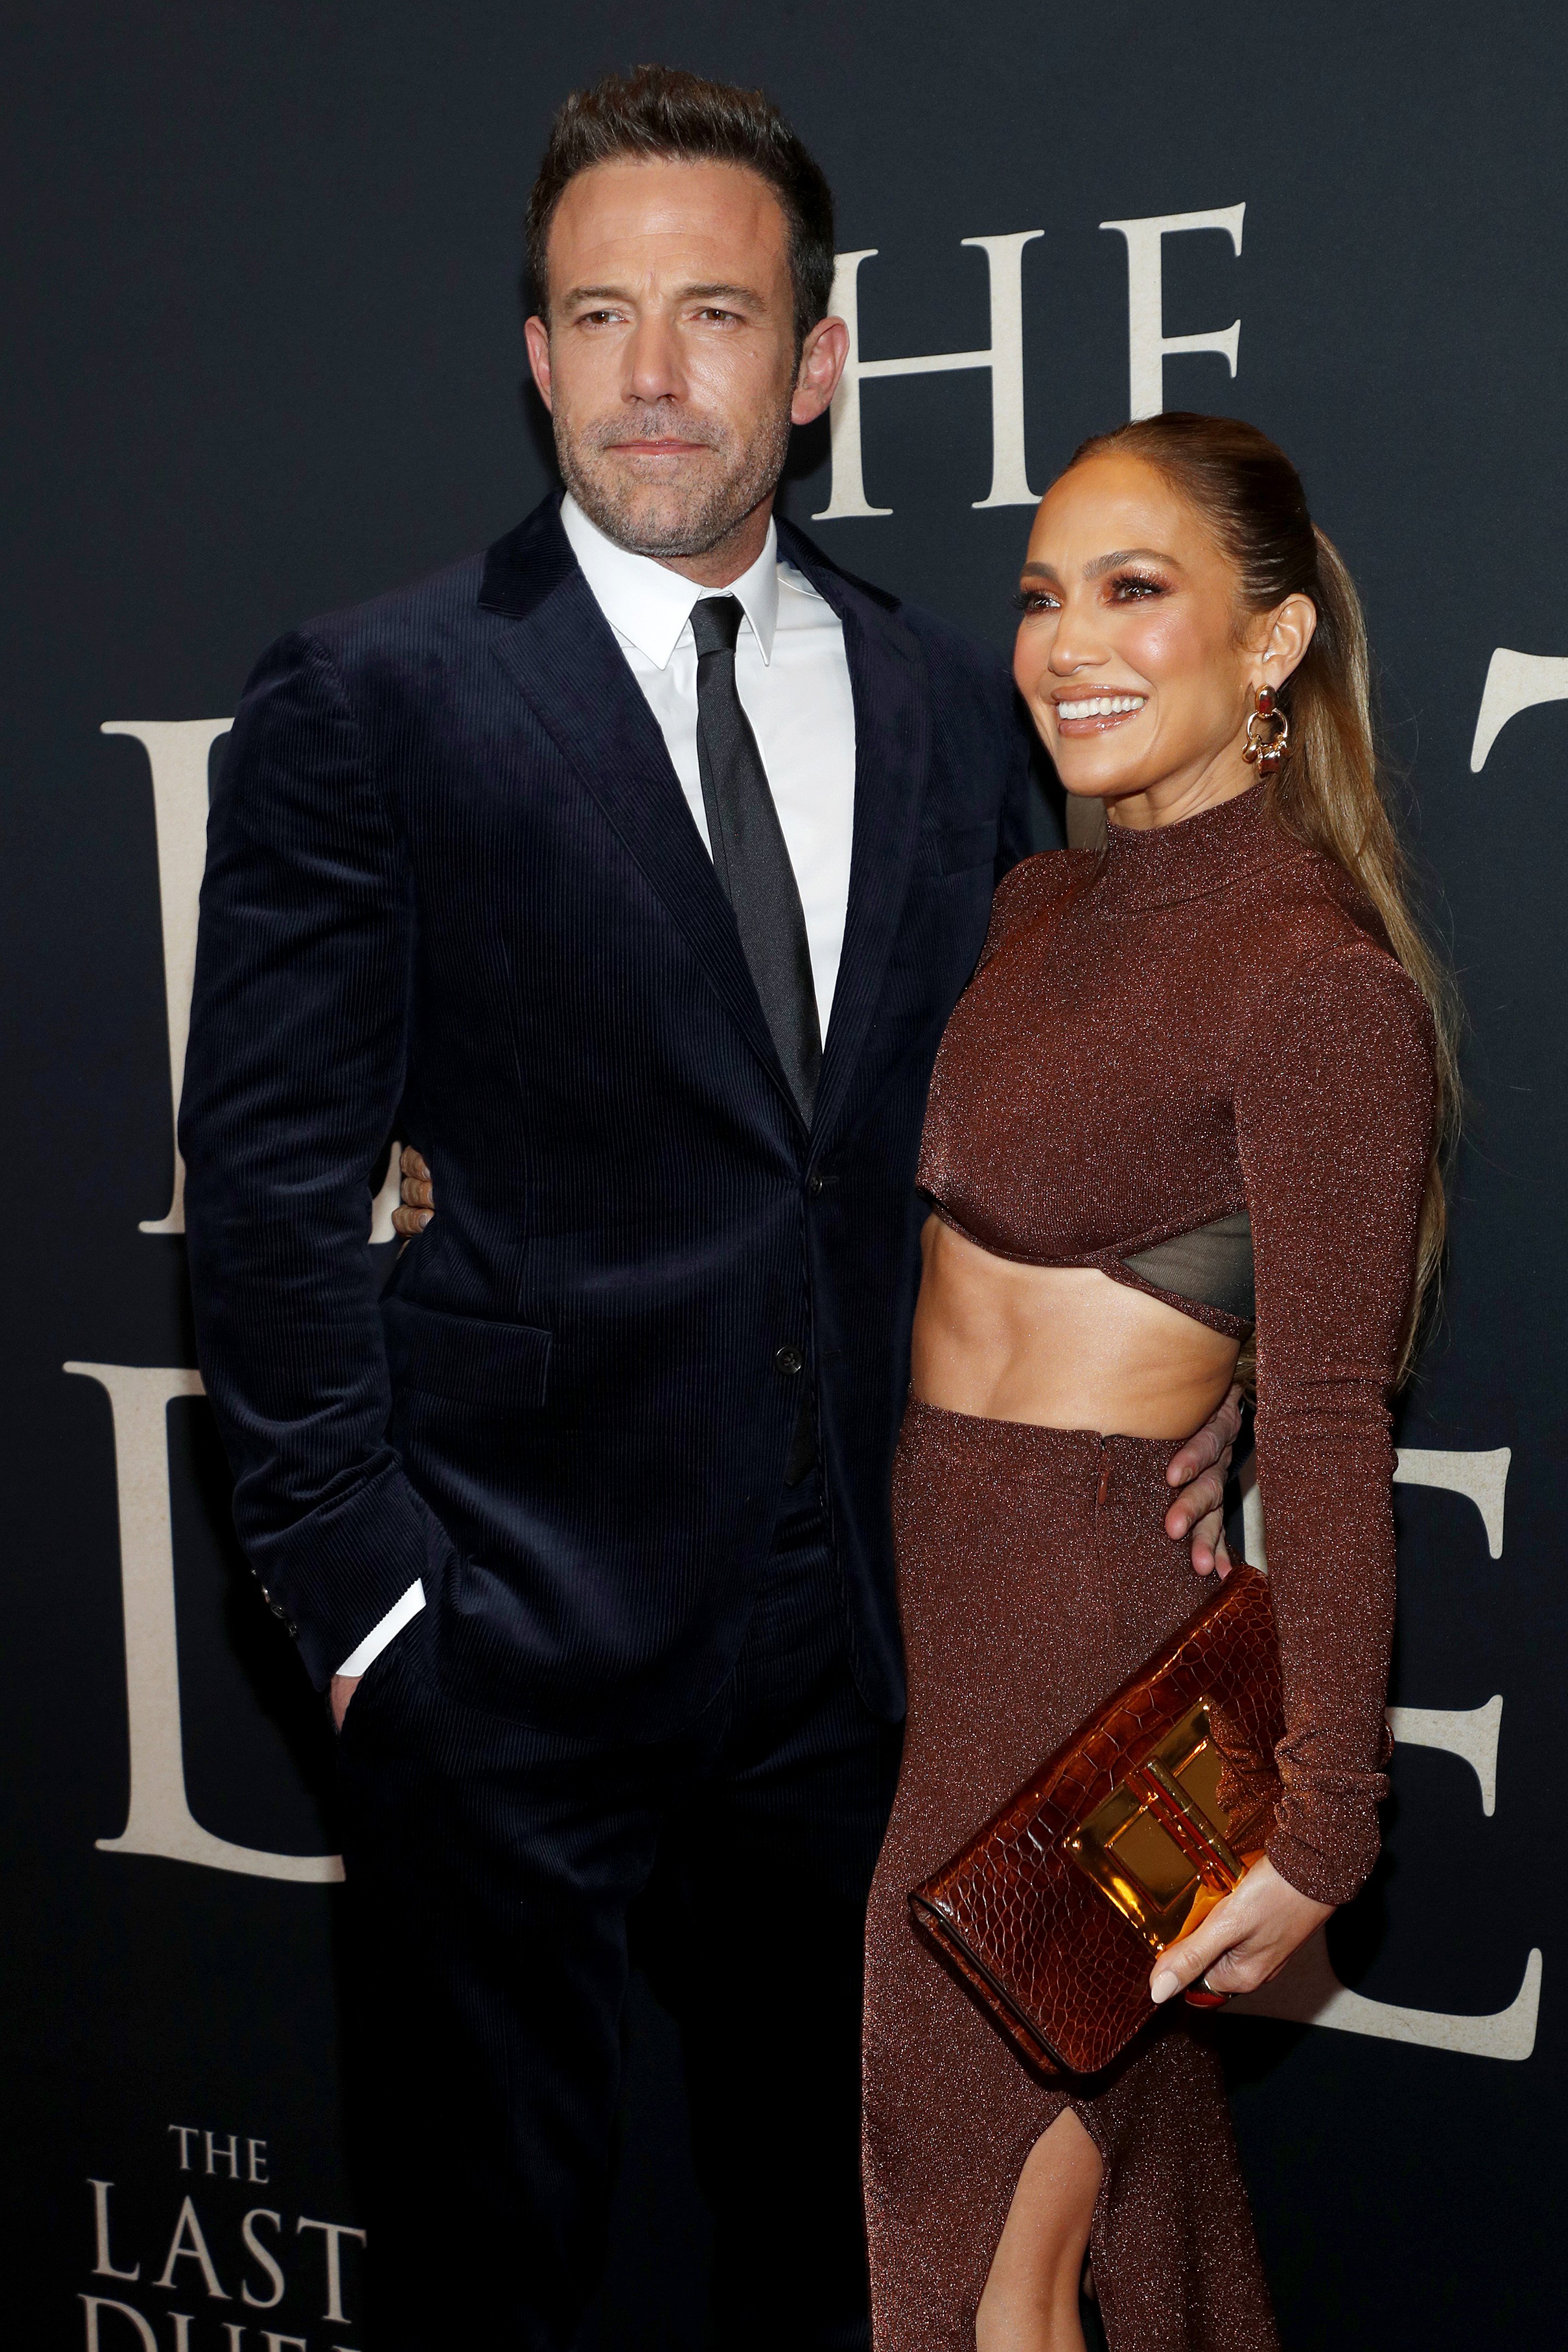 Ben Affleck y Jennifer Lopez asisten al estreno de The Last Duel New York el 9 de octubre de 2021 en la ciudad de Nueva York. | Foto: Getty Images